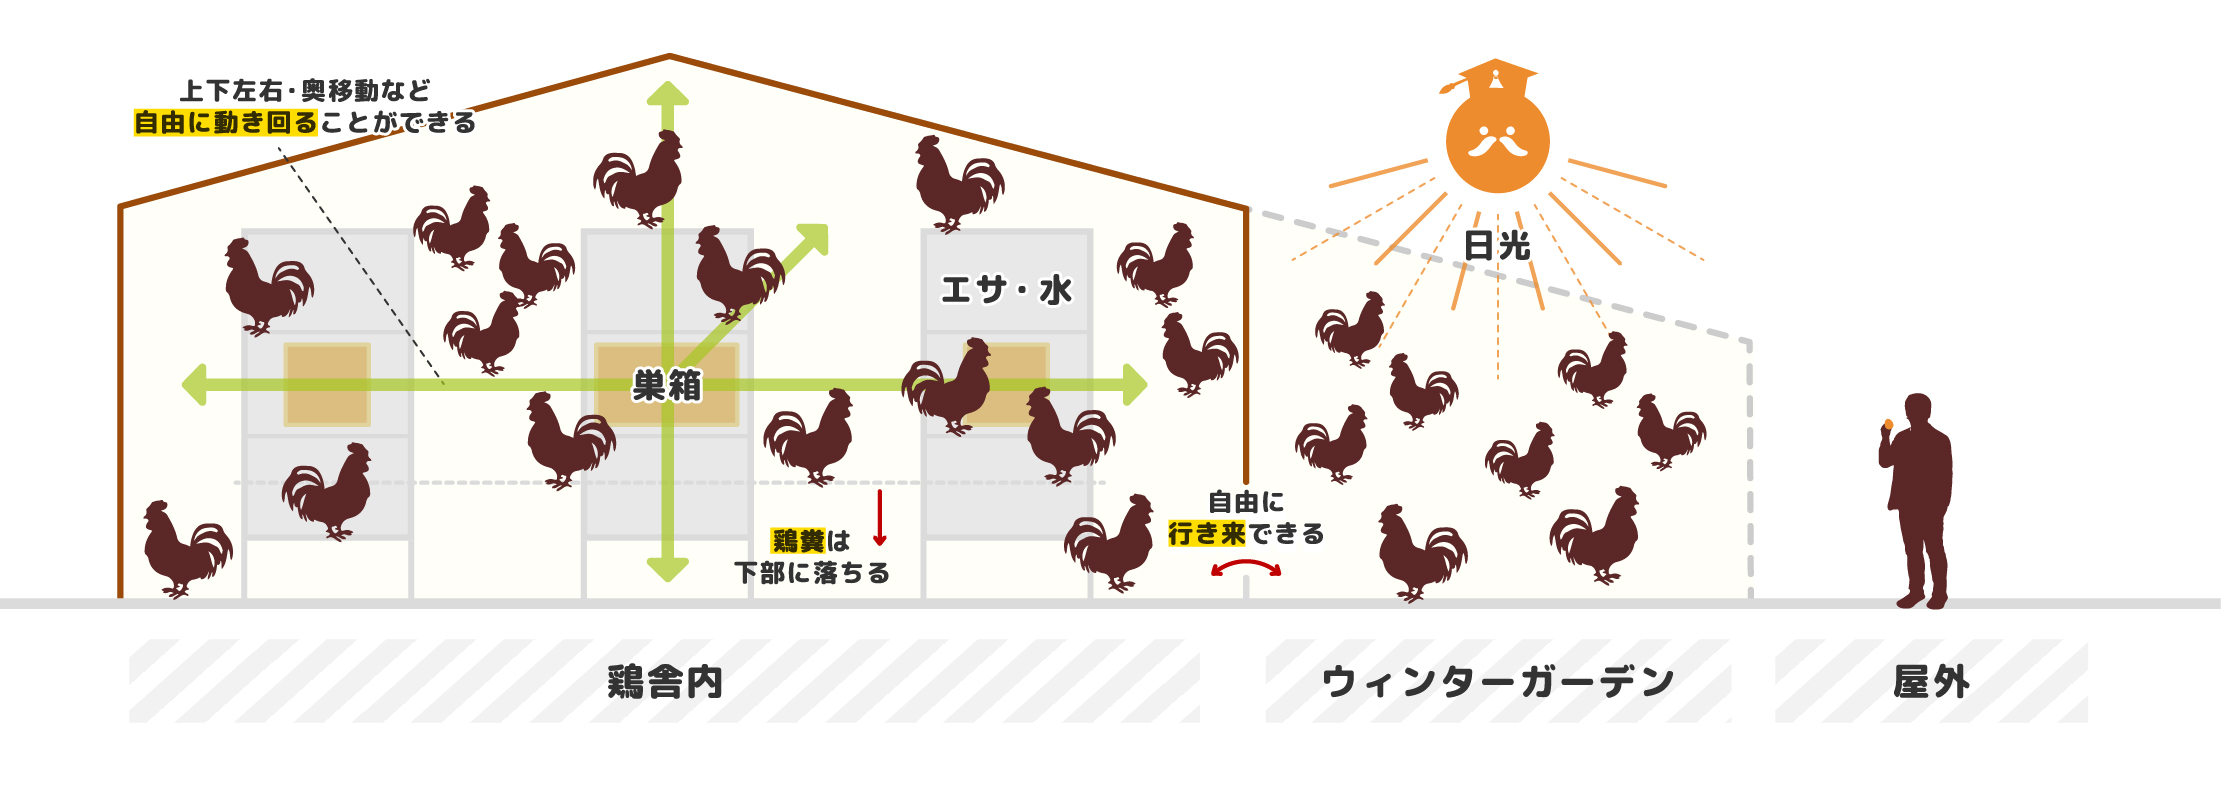 エイビアリー鶏舎構造図